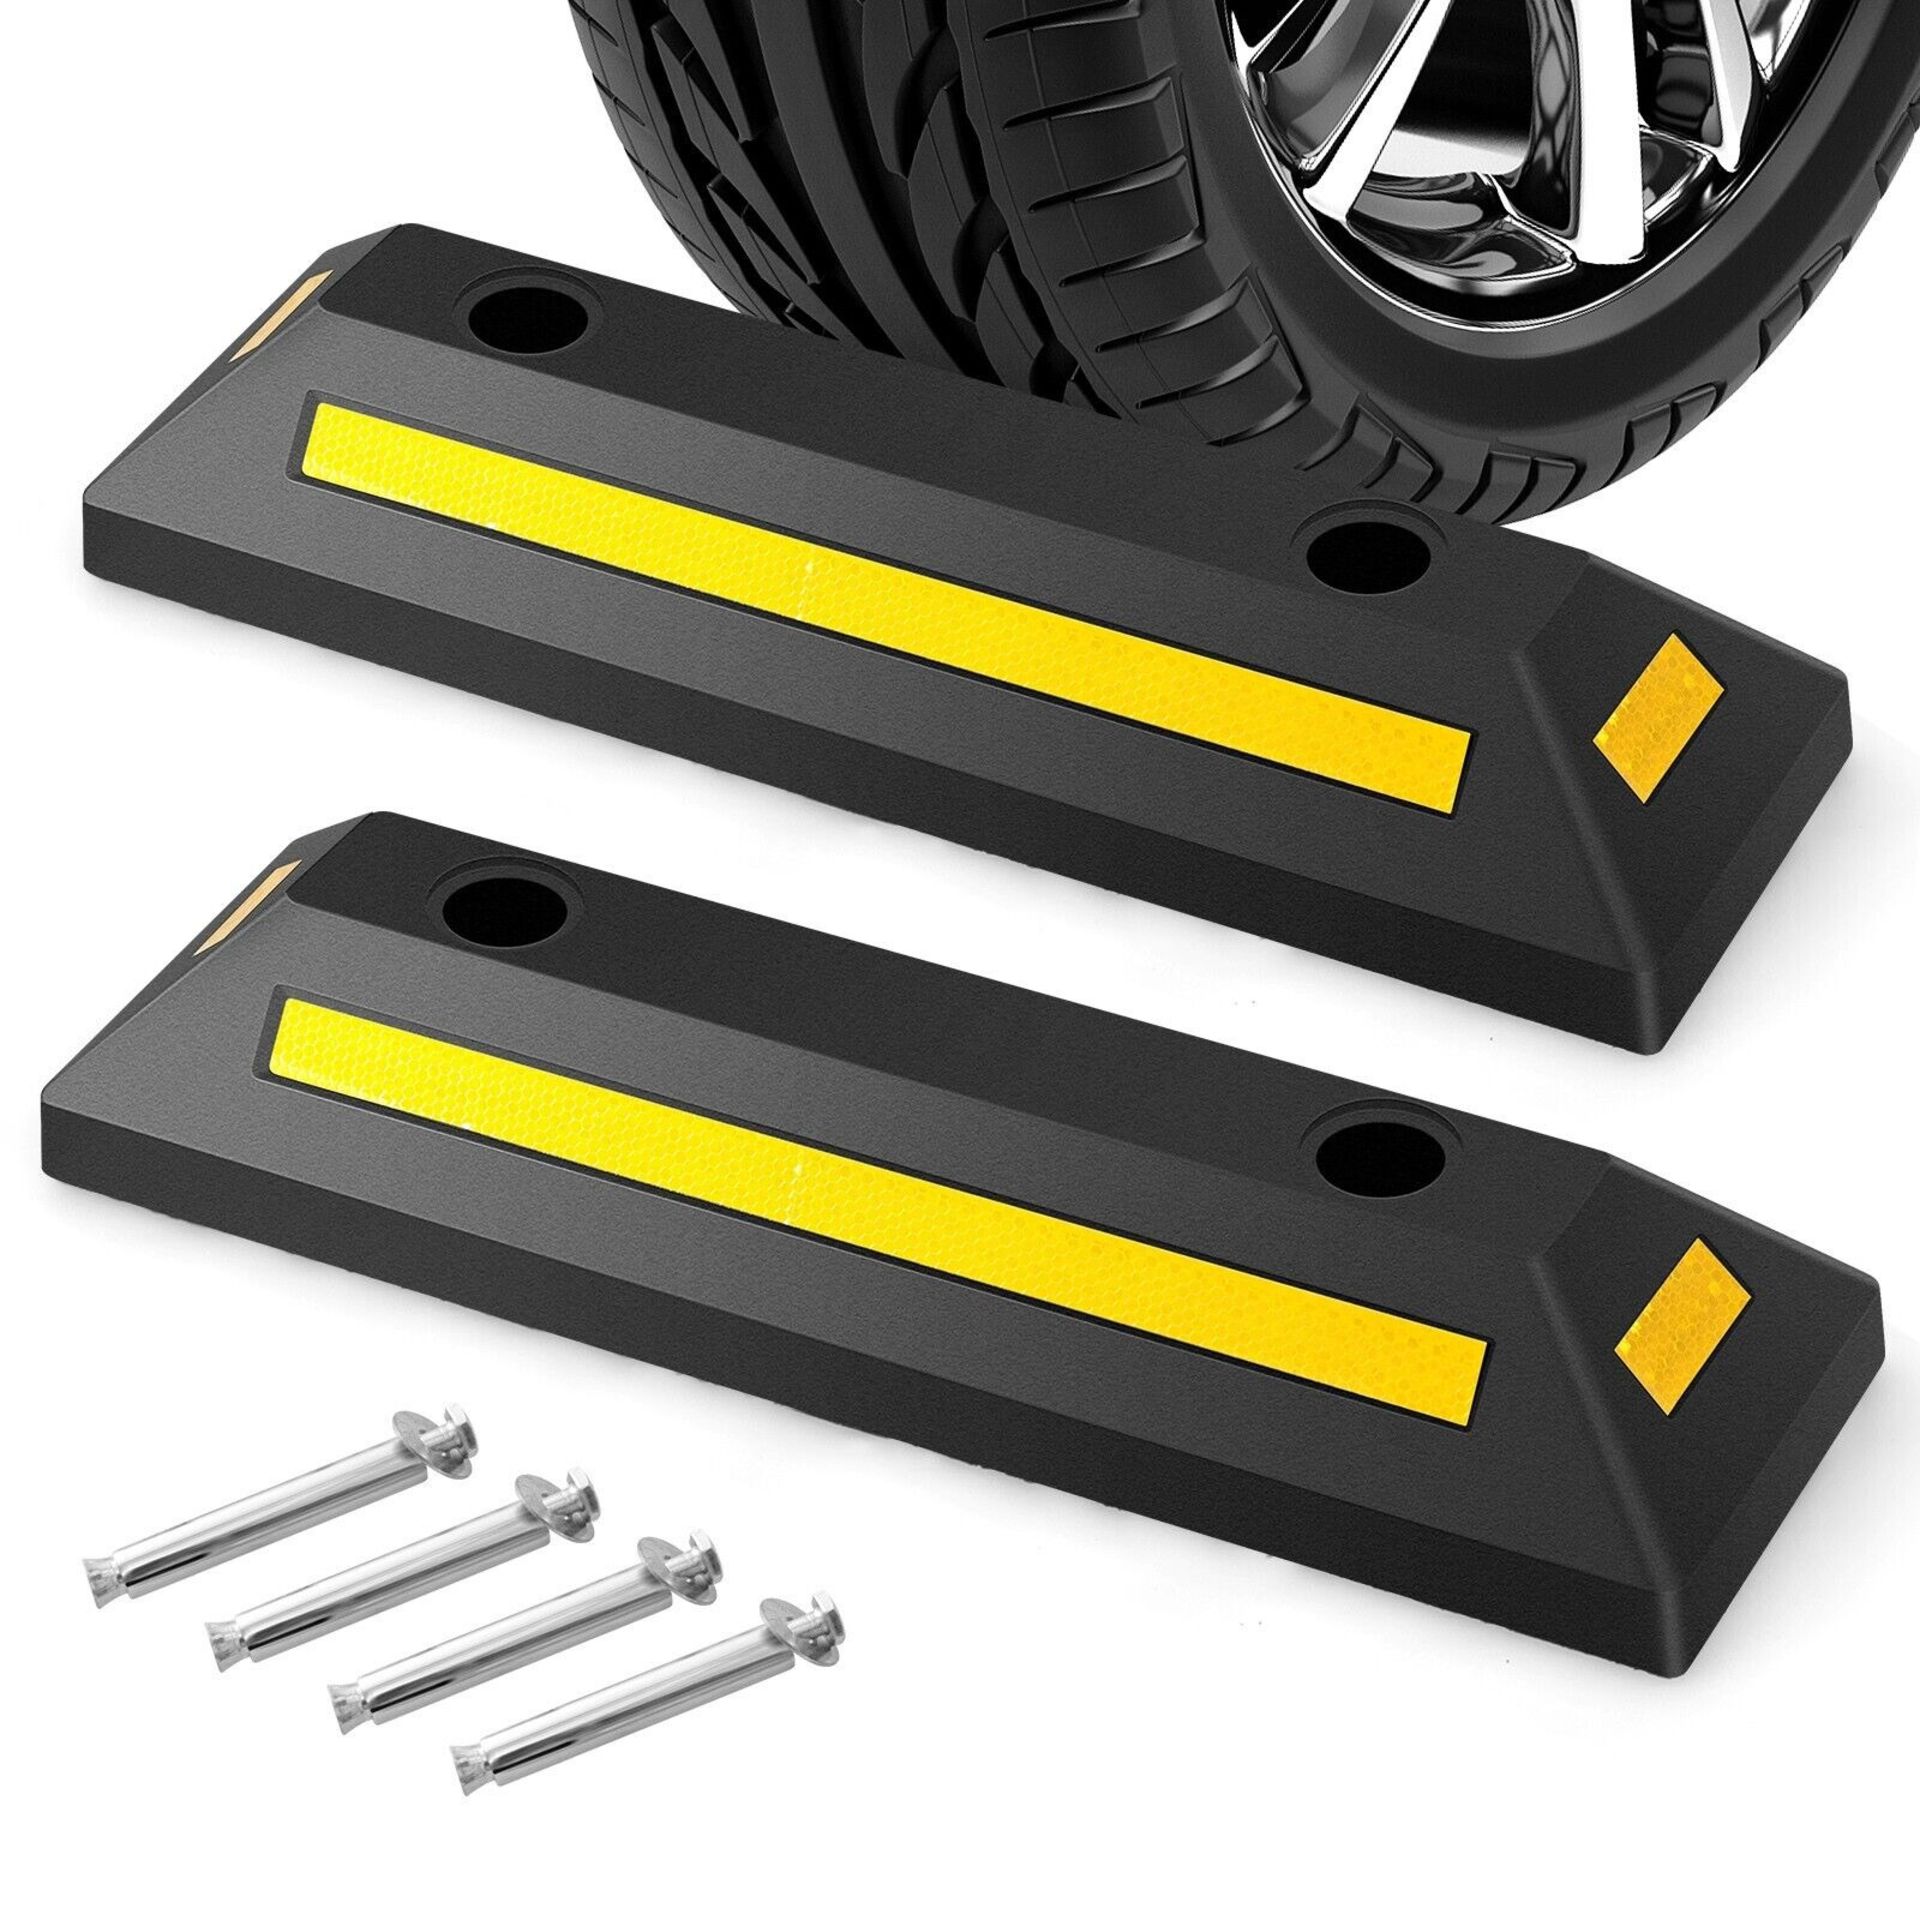 Garage Vehicle Floor Stopper 2 Pack Durable &Heavy Duty Rubber Wheel Stopper 4T - ER53